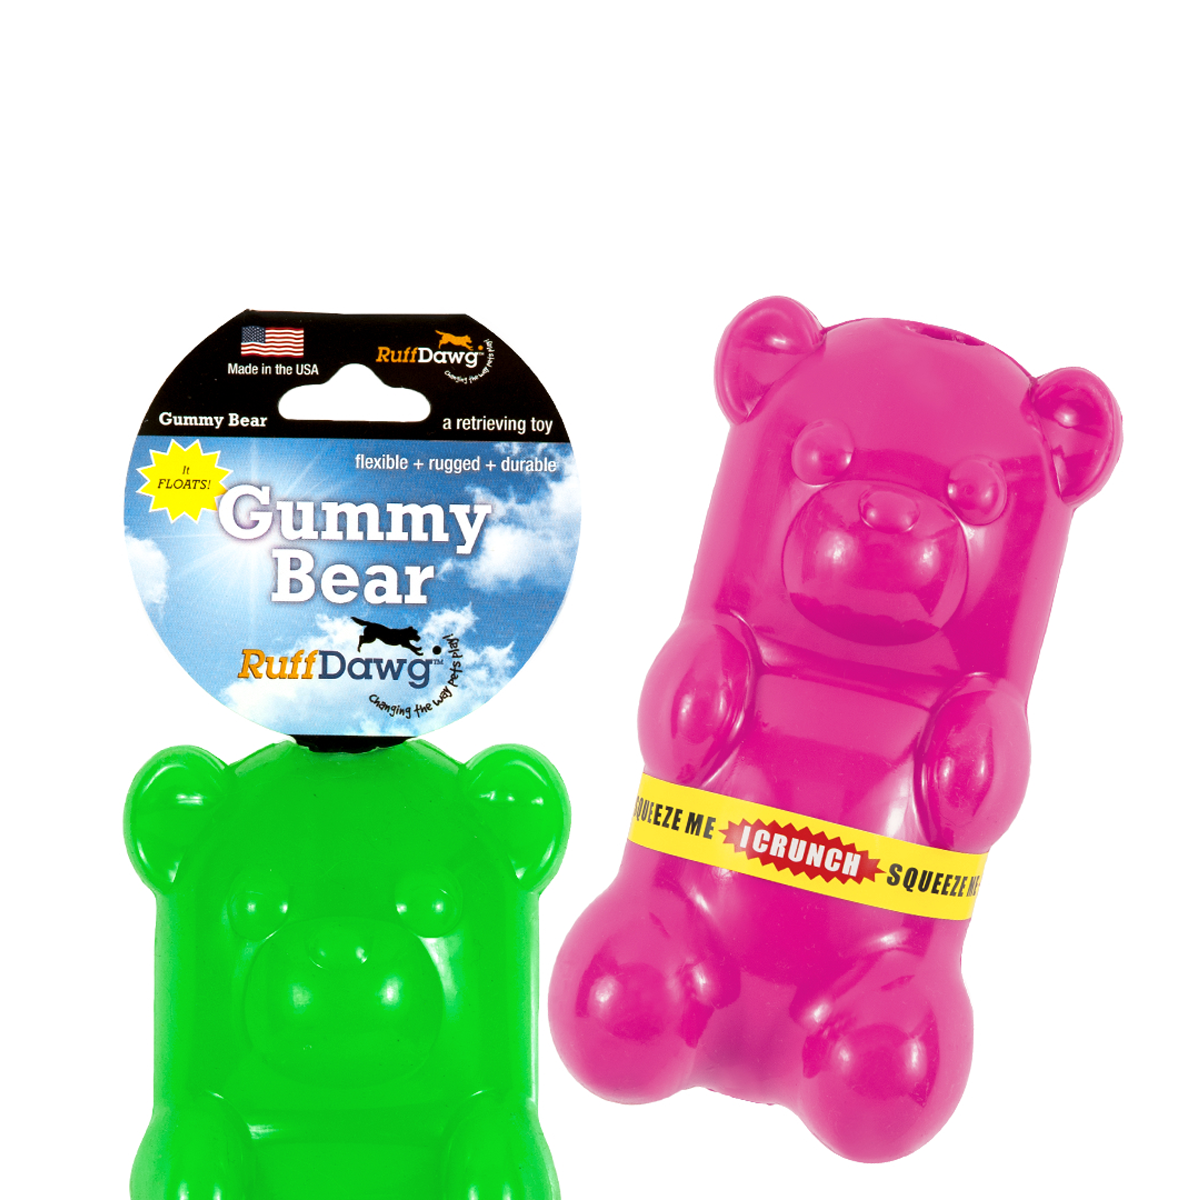 RuffDawg Gummy Bear Crunch